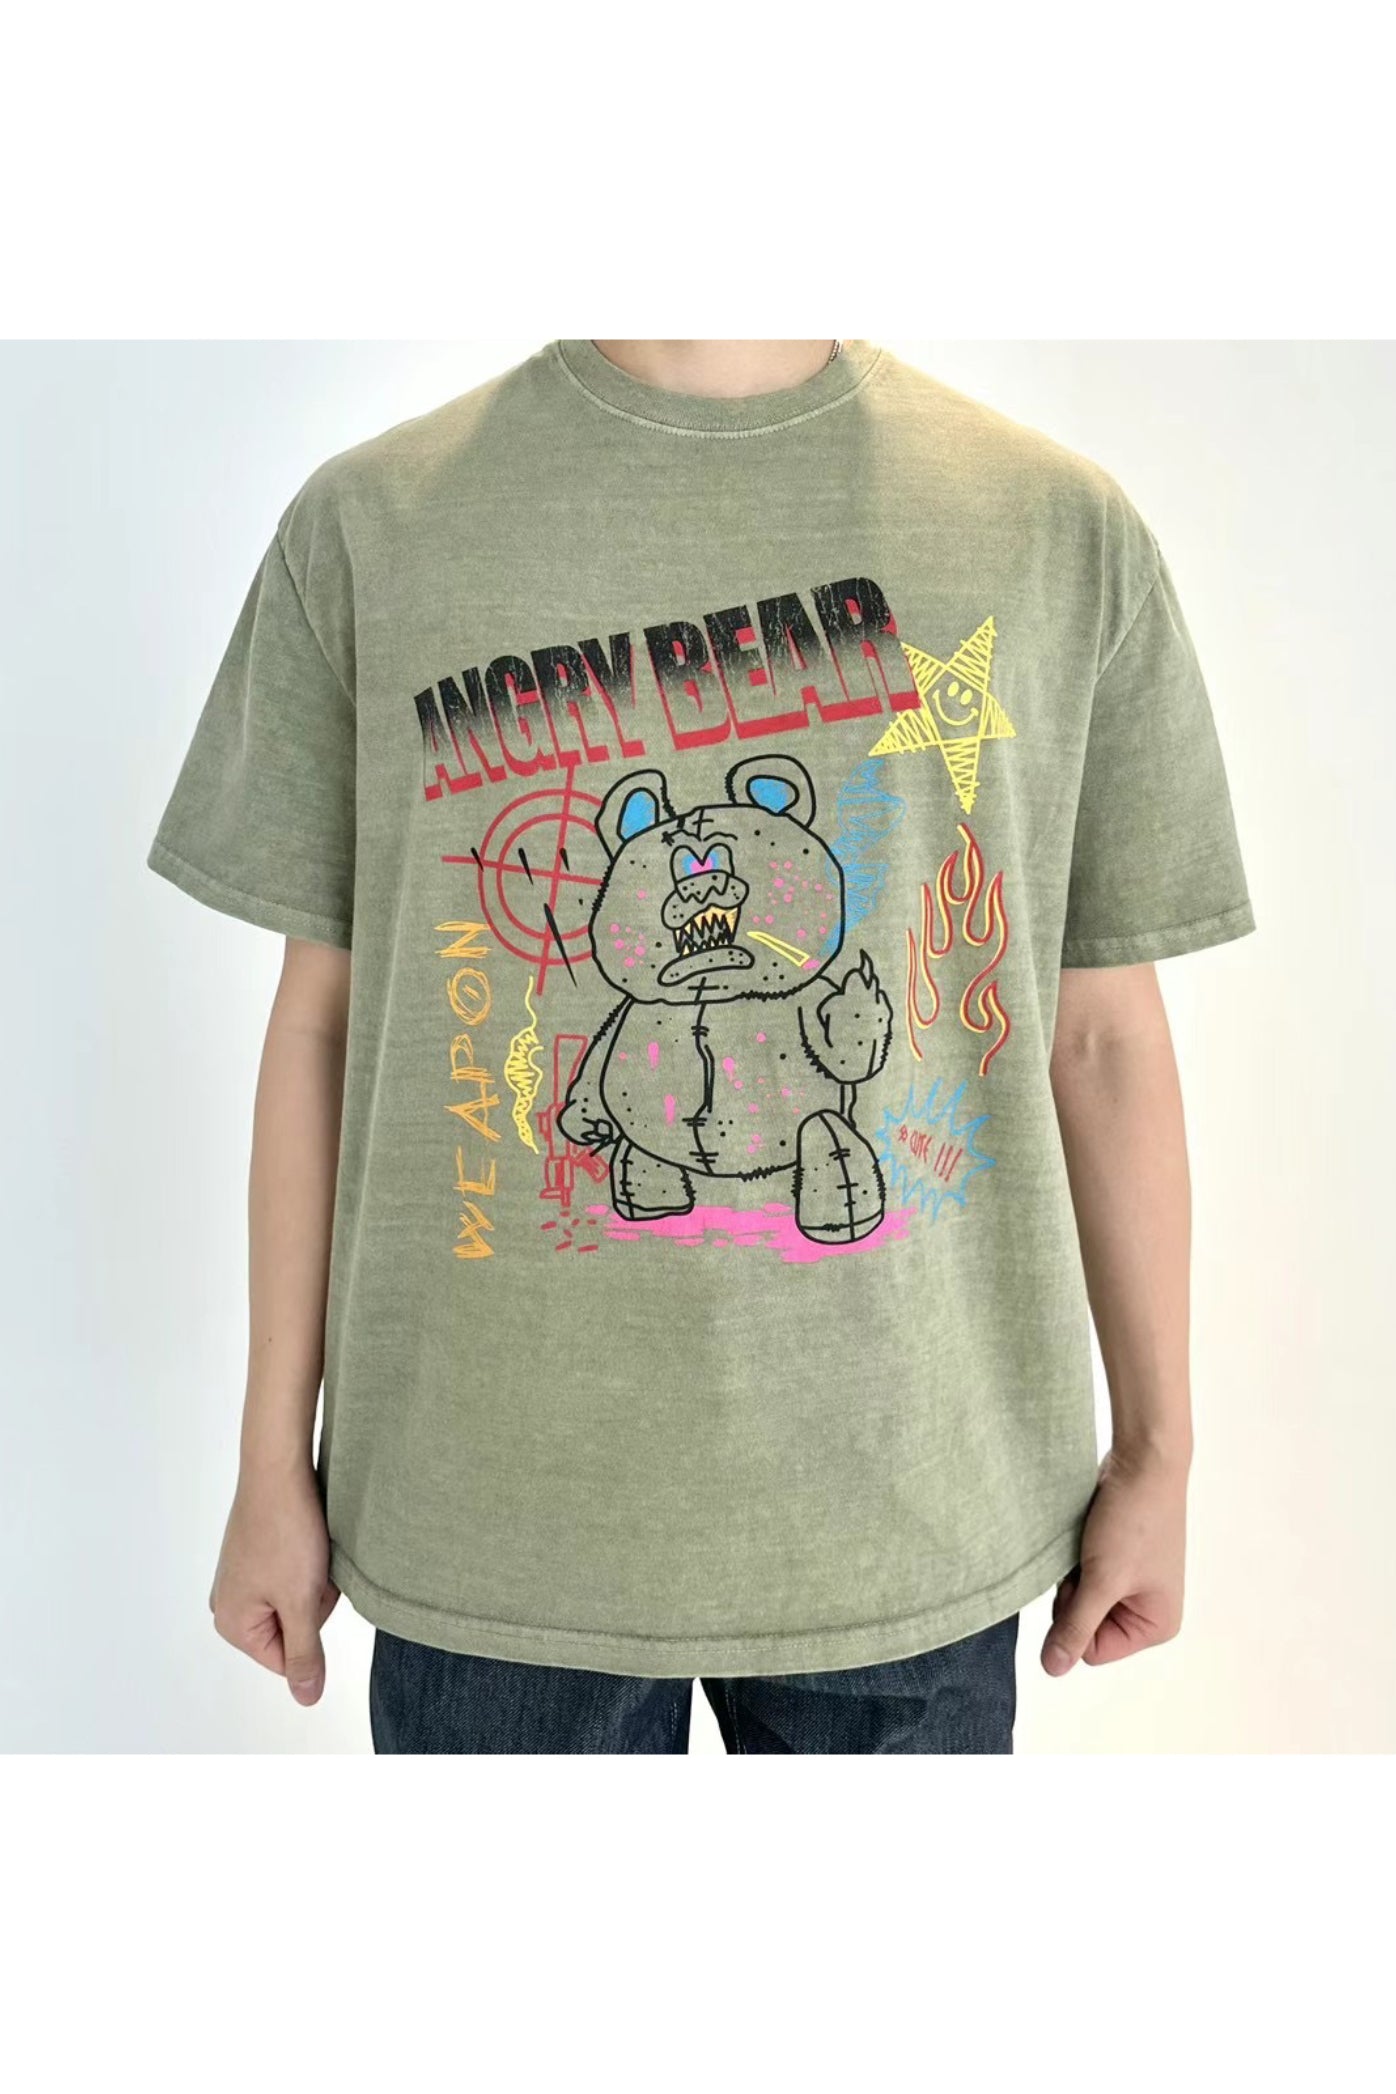 Angry Bear 復古洗水T恤